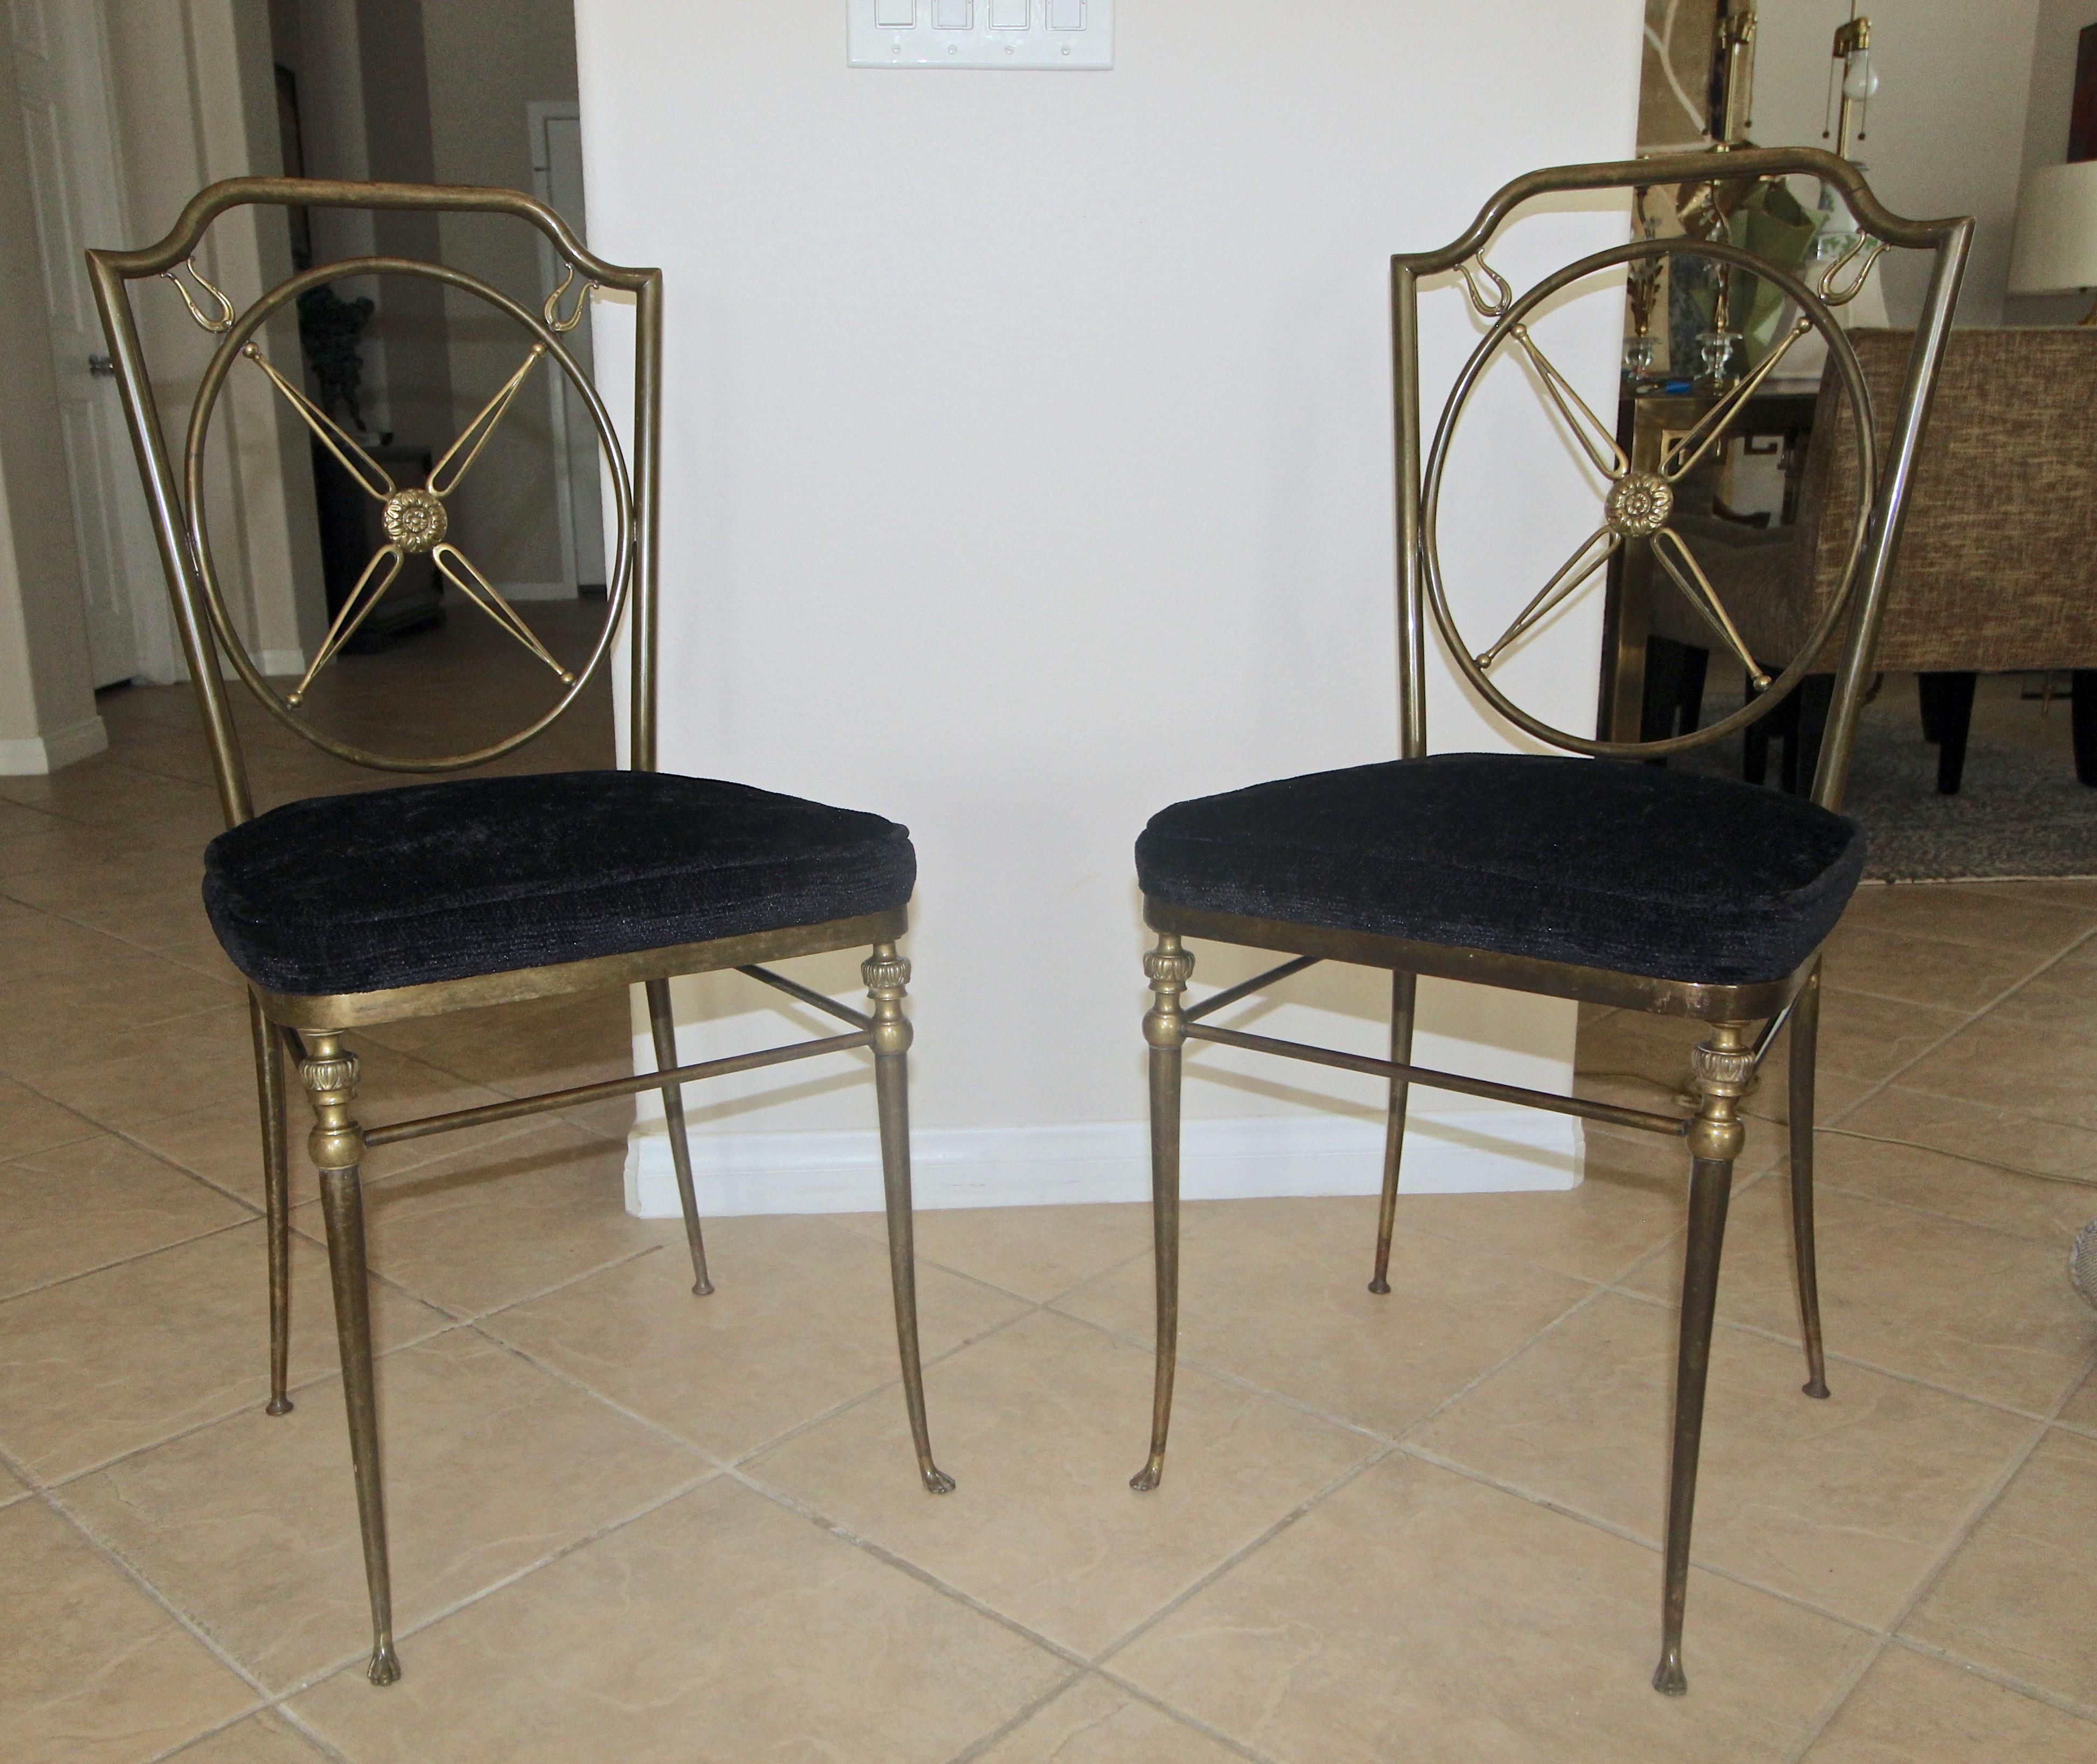 Magnifique paire de chaises d'appoint ou de salon en bronze de style directoire français. Les chaises ont une belle patine d'origine, chaude et vieillie. Les détails sont réalisés de manière experte, notamment les pieds délicats et le motif en 